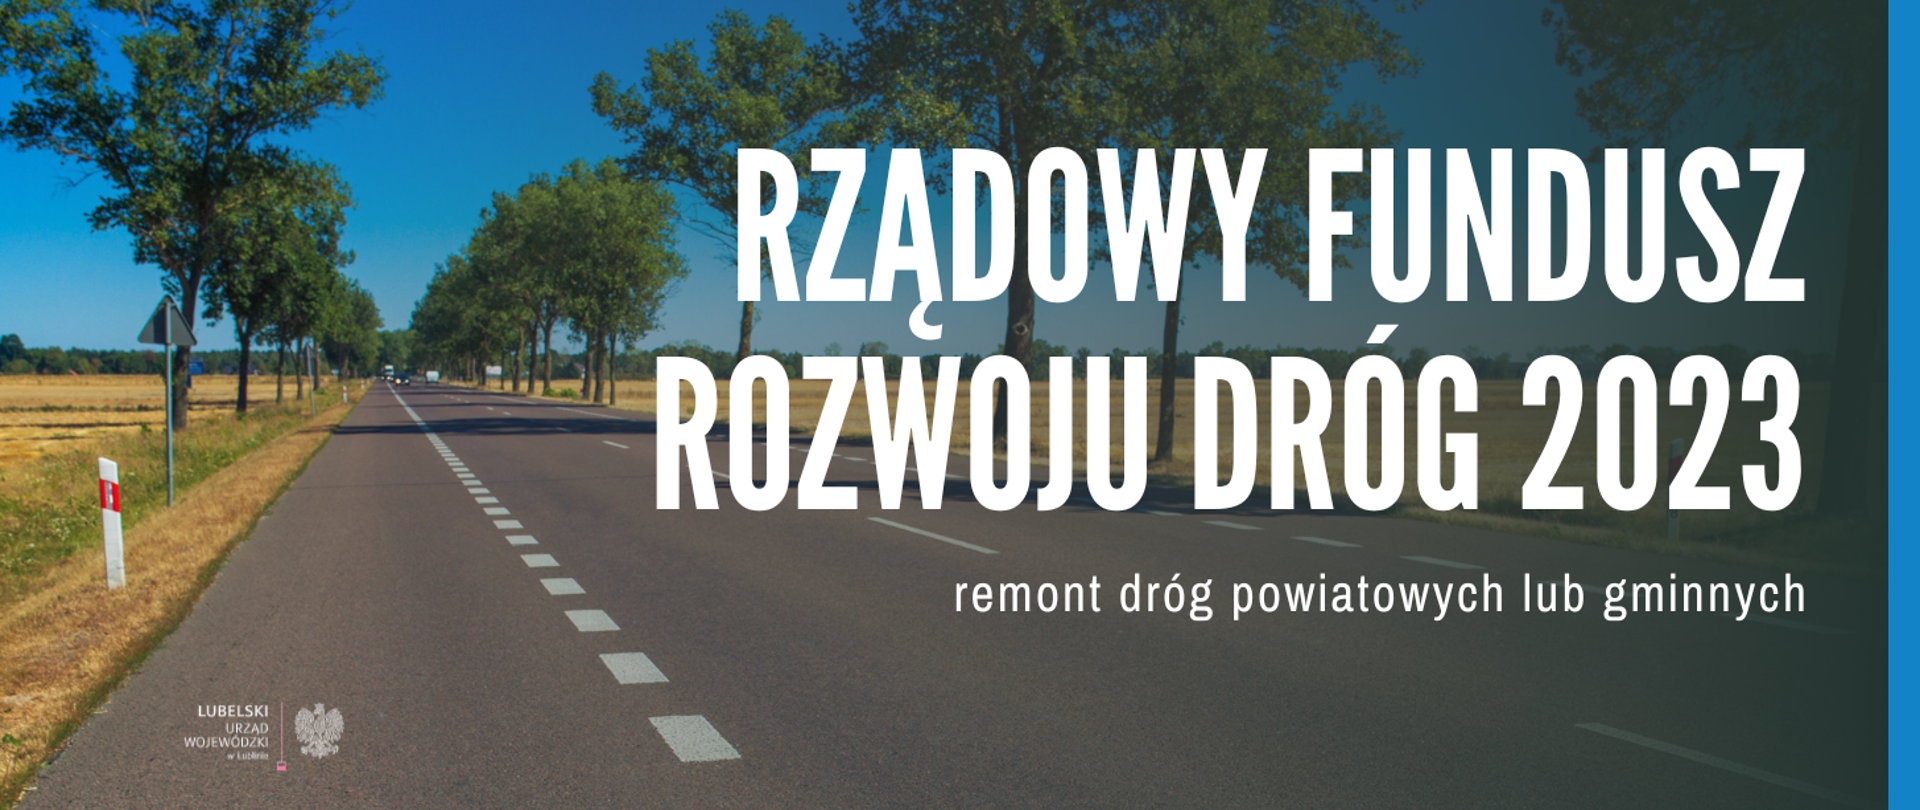 Grafika z napisem "Rządowy fundusz rozwoju dróg 2023 - remont dróg powiatowych lub gminnych"